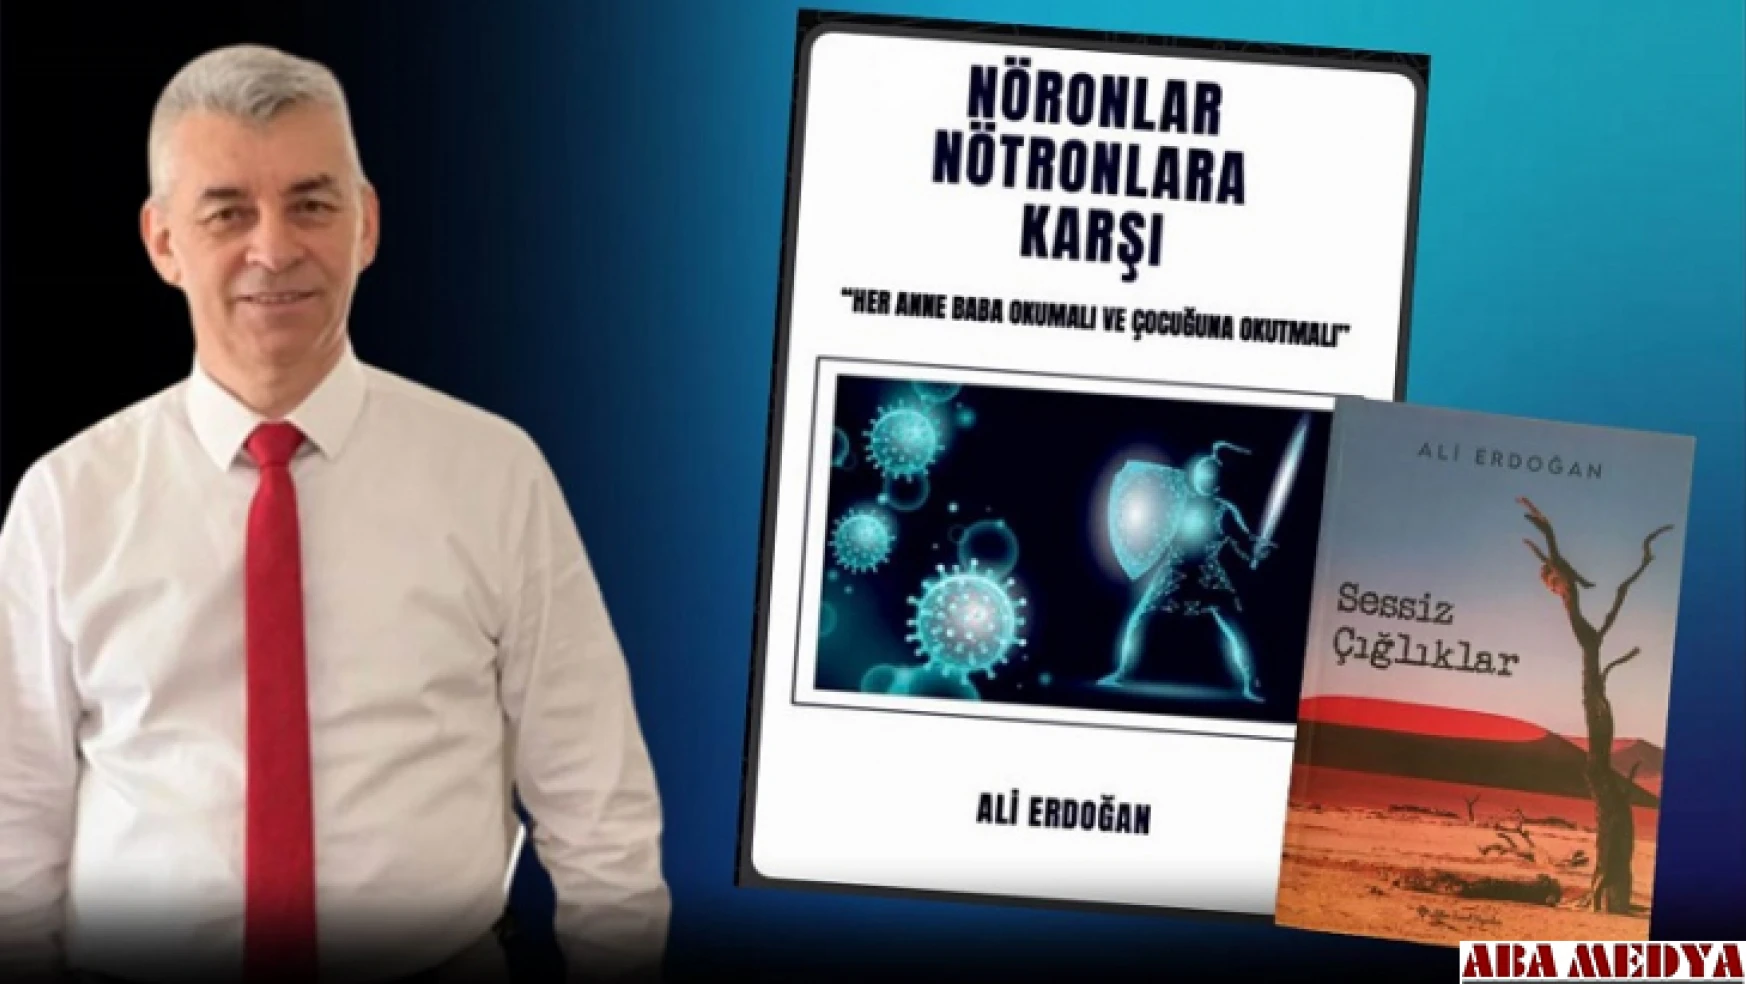 Eğitmen Ali Erdoğan'ın 2'inci kitabı 'Nöronlar Nötronlara Karşı' yayında.